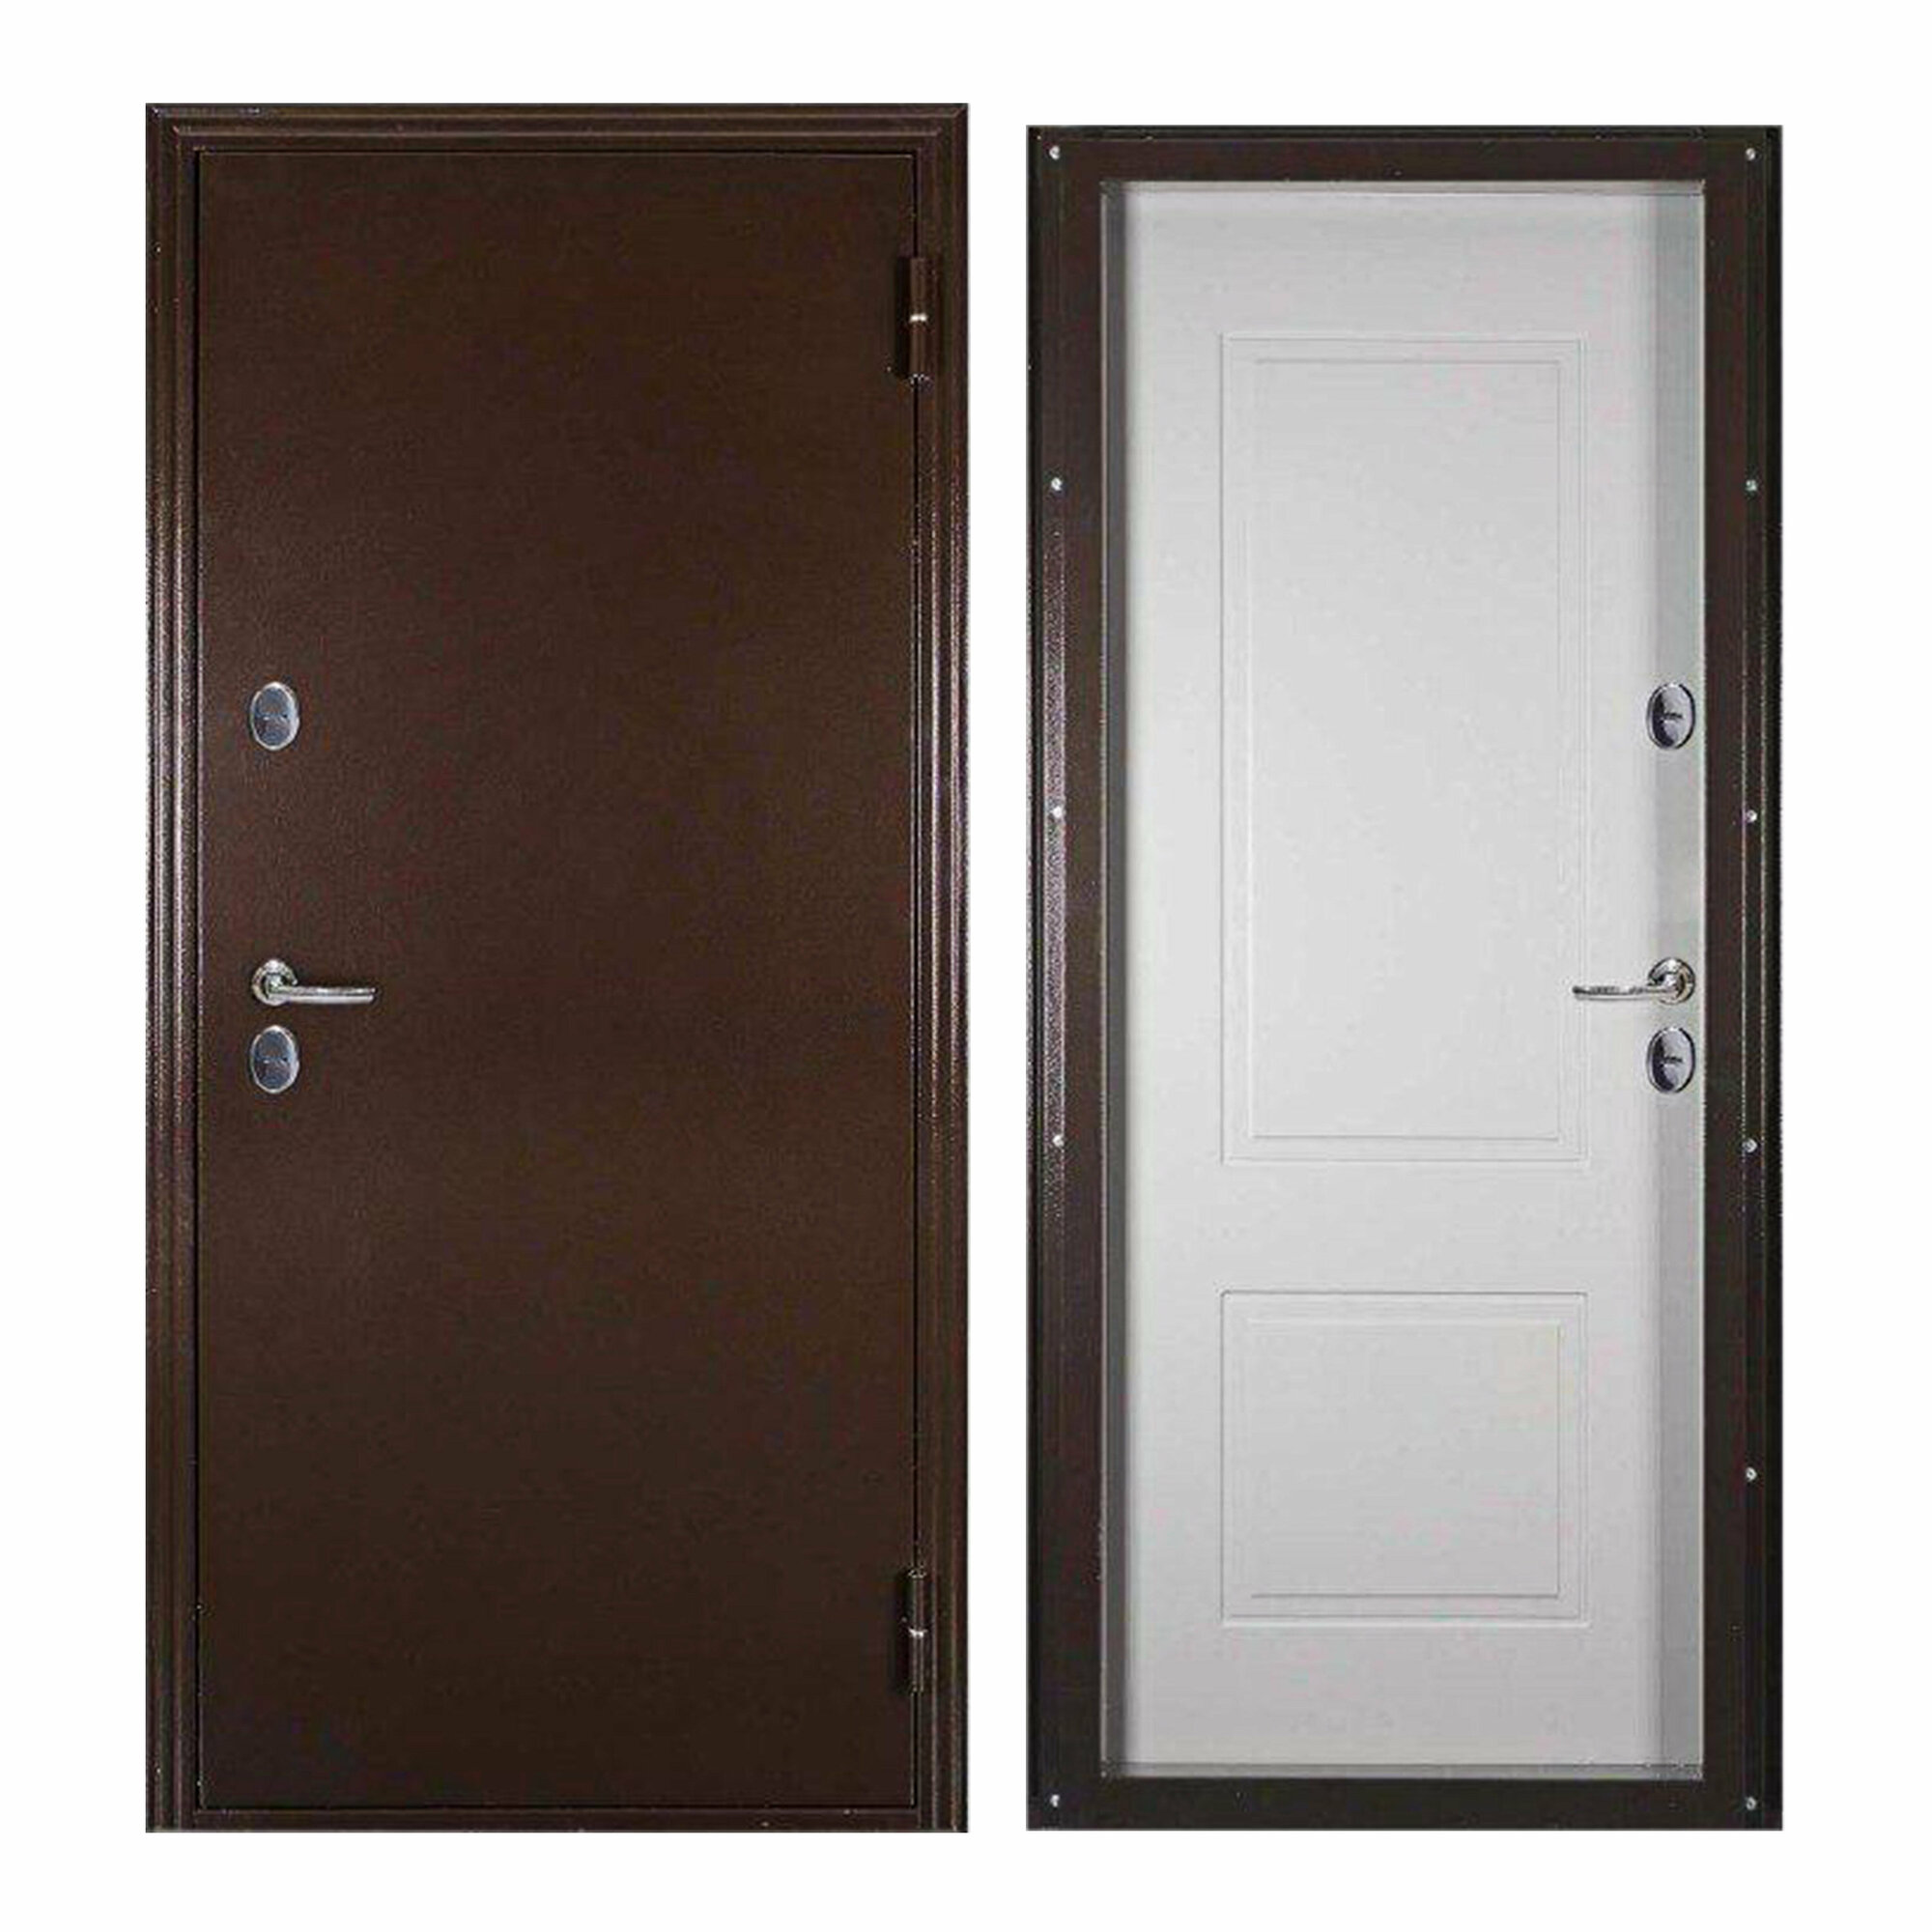 Дверь входная ProLine для дома Термо Лайт 870х2050 правый, терморазрыв, тепло-шумоизоляция, антикоррозийная защита, коричневый/белый